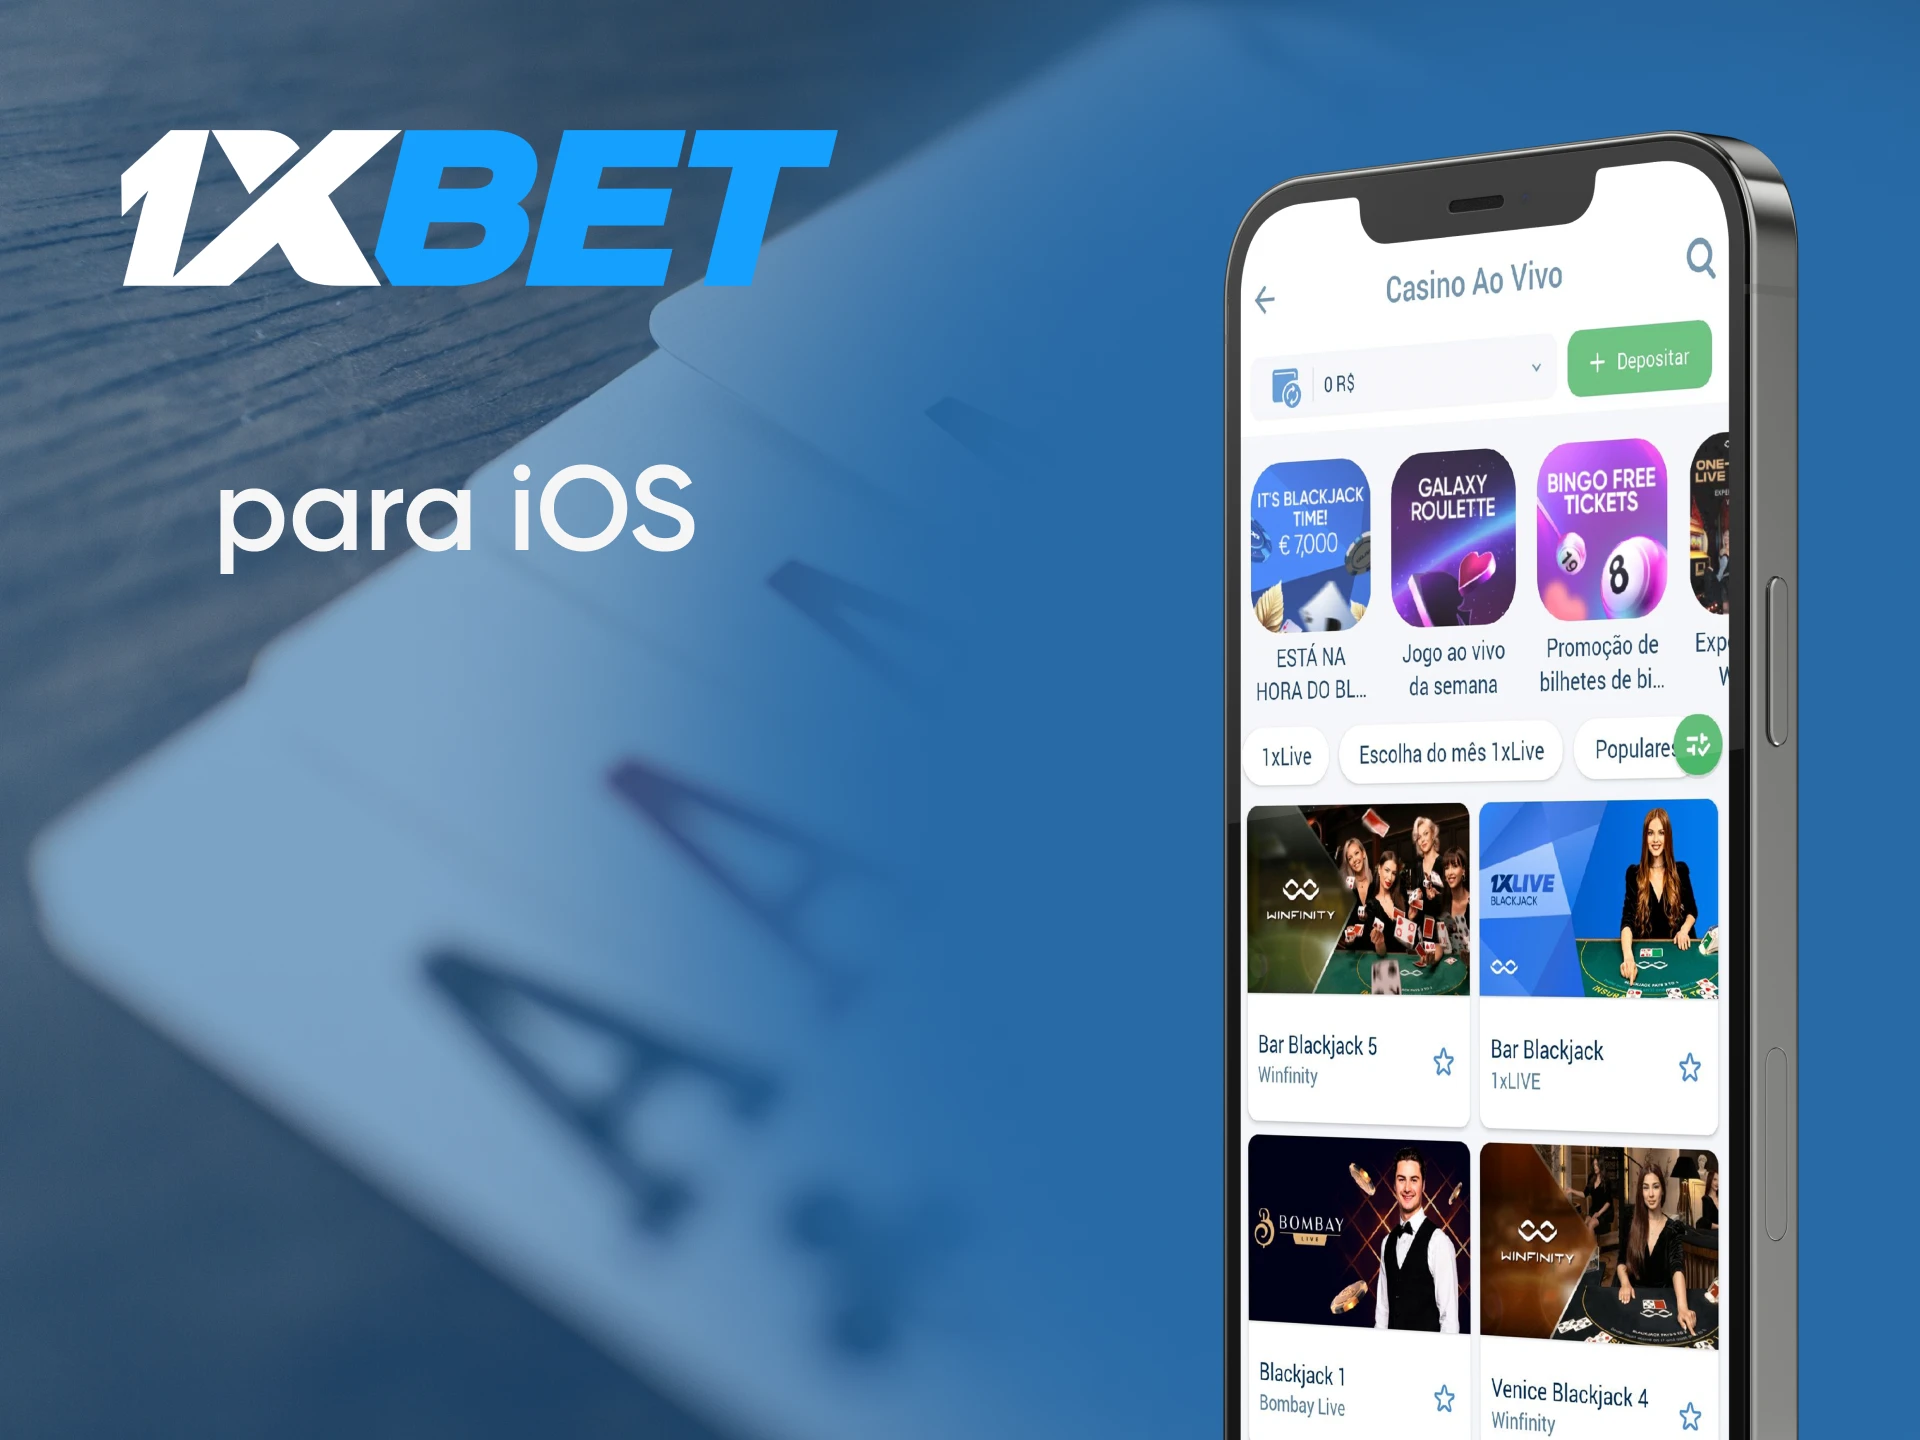 Jogue blackjack através do aplicativo 1xbet para iOS.